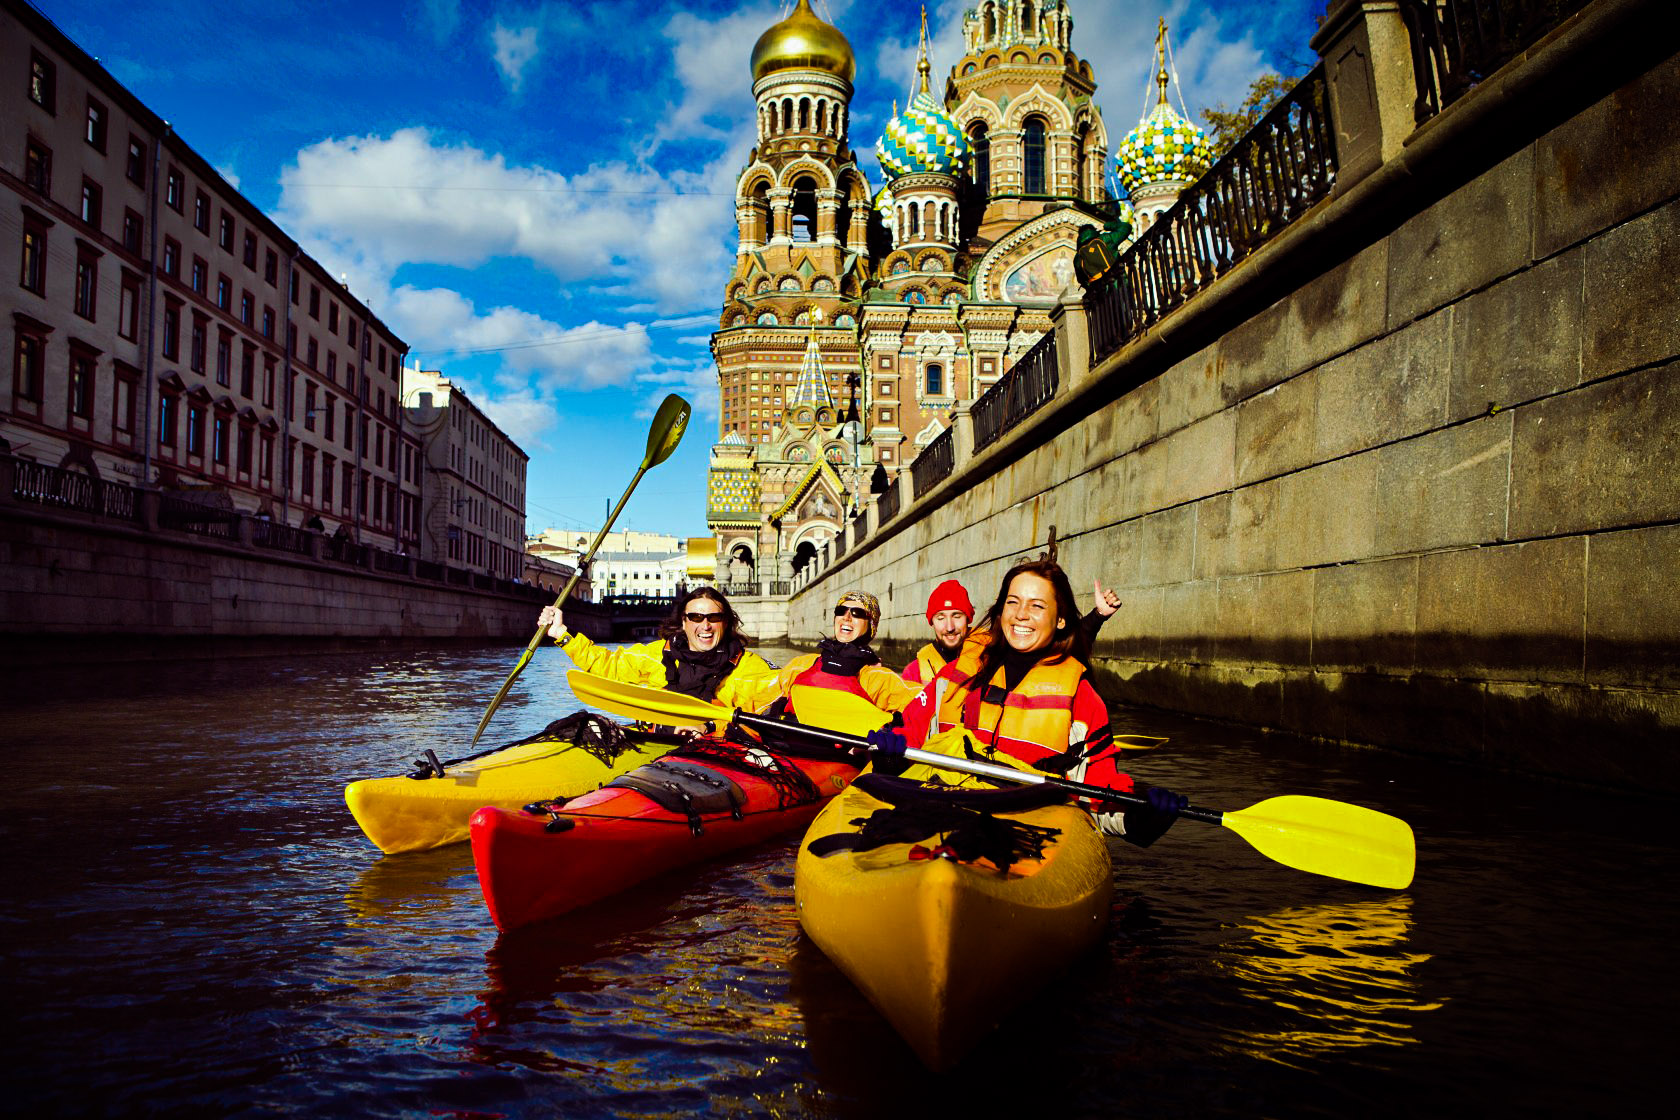 Отдых на воде в Петербурге: сочетаем активный и познавательный туризм